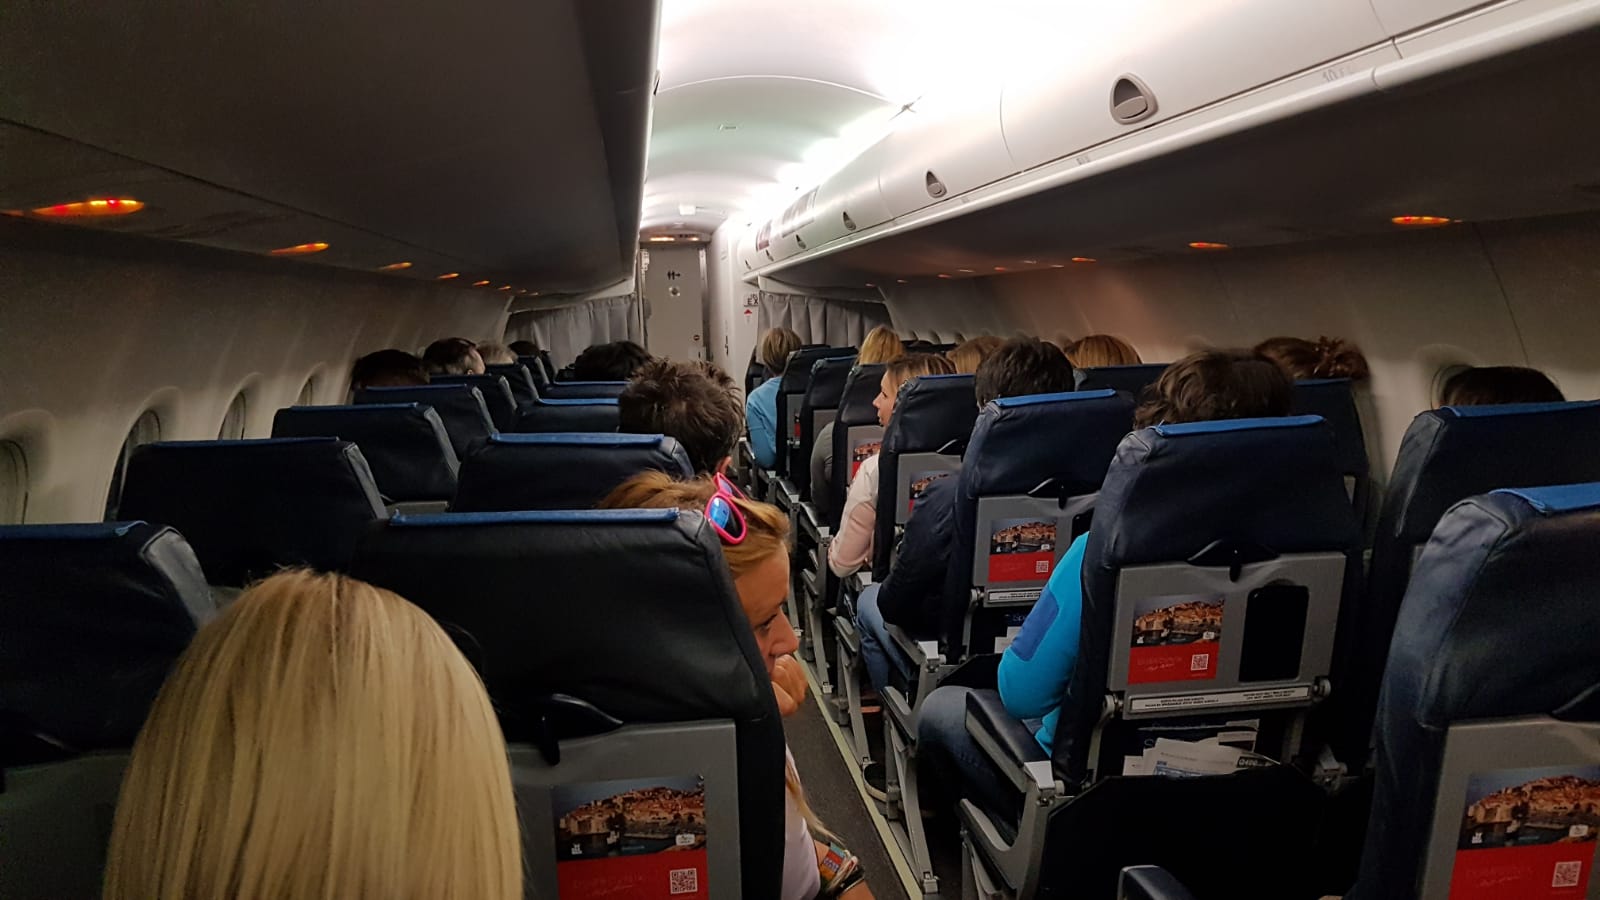 Kurs namenjen savladavanju straha od letenja ponovo u Zagrebu: Teorijska predavanja i praktični let u putničkom avionu protiv avio-fobije